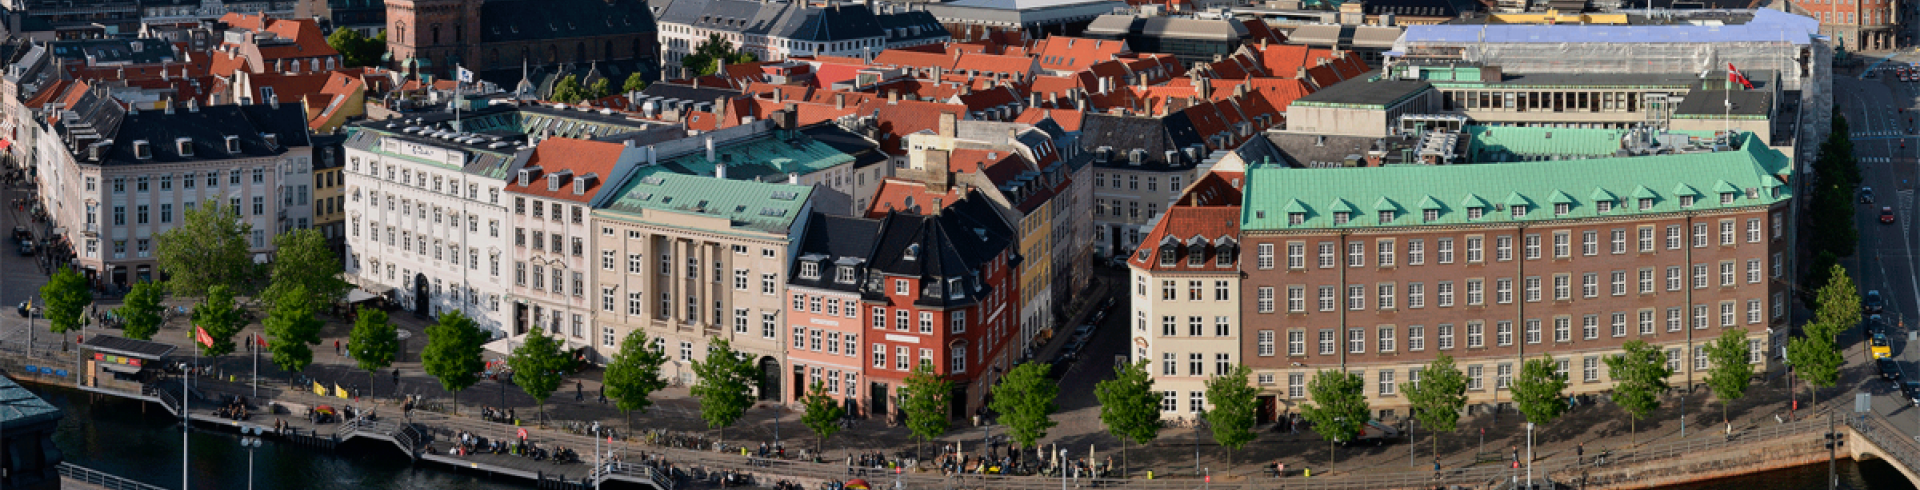 Building in Copenhagen